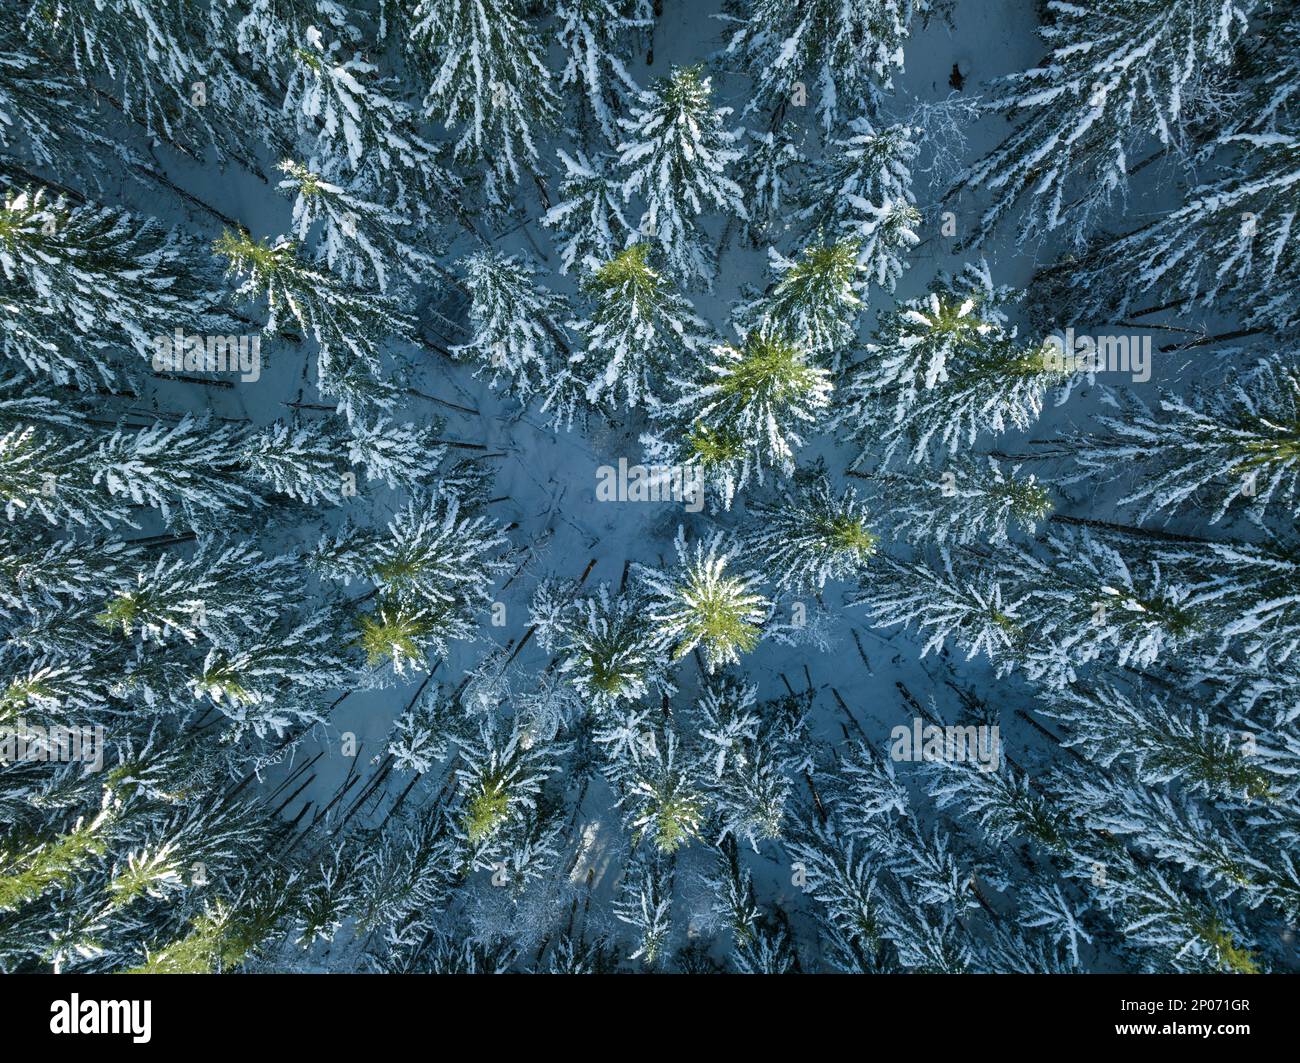 La neve copre una foresta di abeti Douglas in Oregon. Questa parte del Pacifico nord-occidentale è conosciuta per le sue vaste risorse naturali, in particolare le foreste. Foto Stock